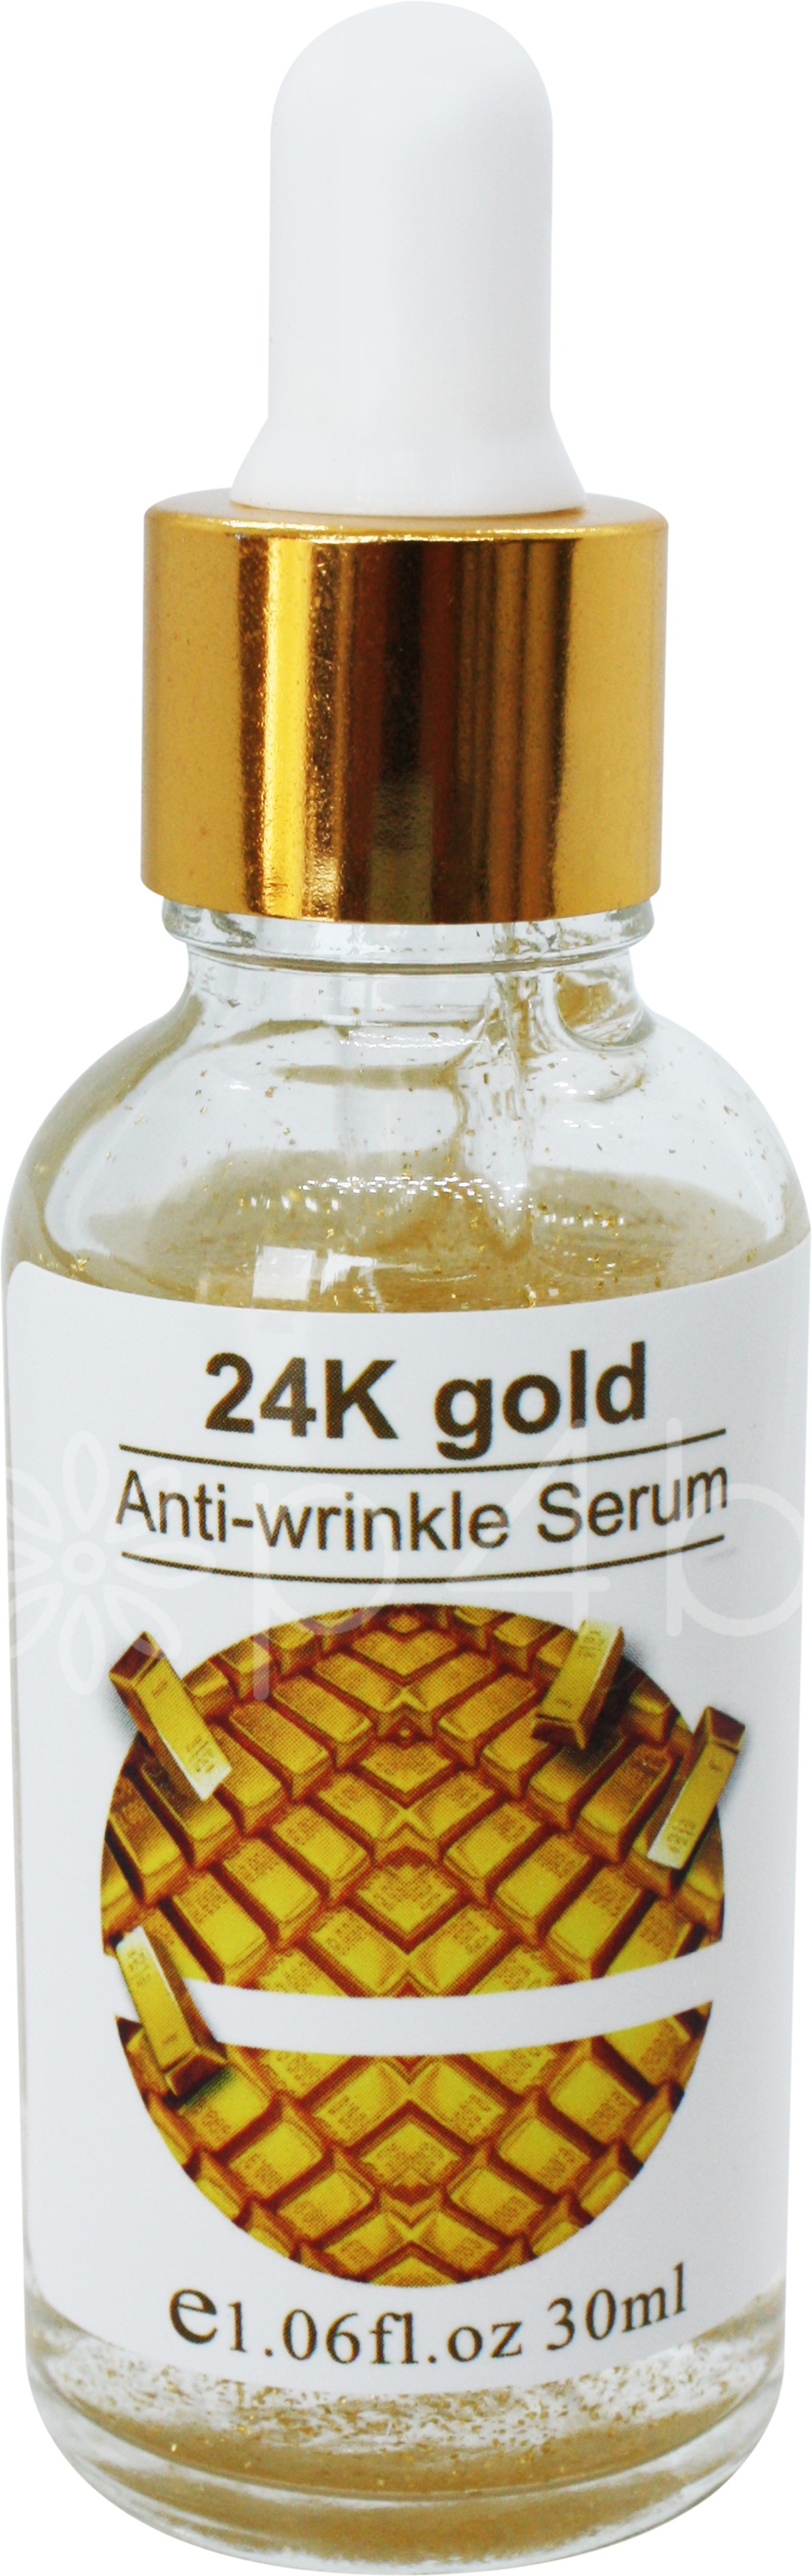 24k-serum-med-guld-og-vitamin-c.jpg